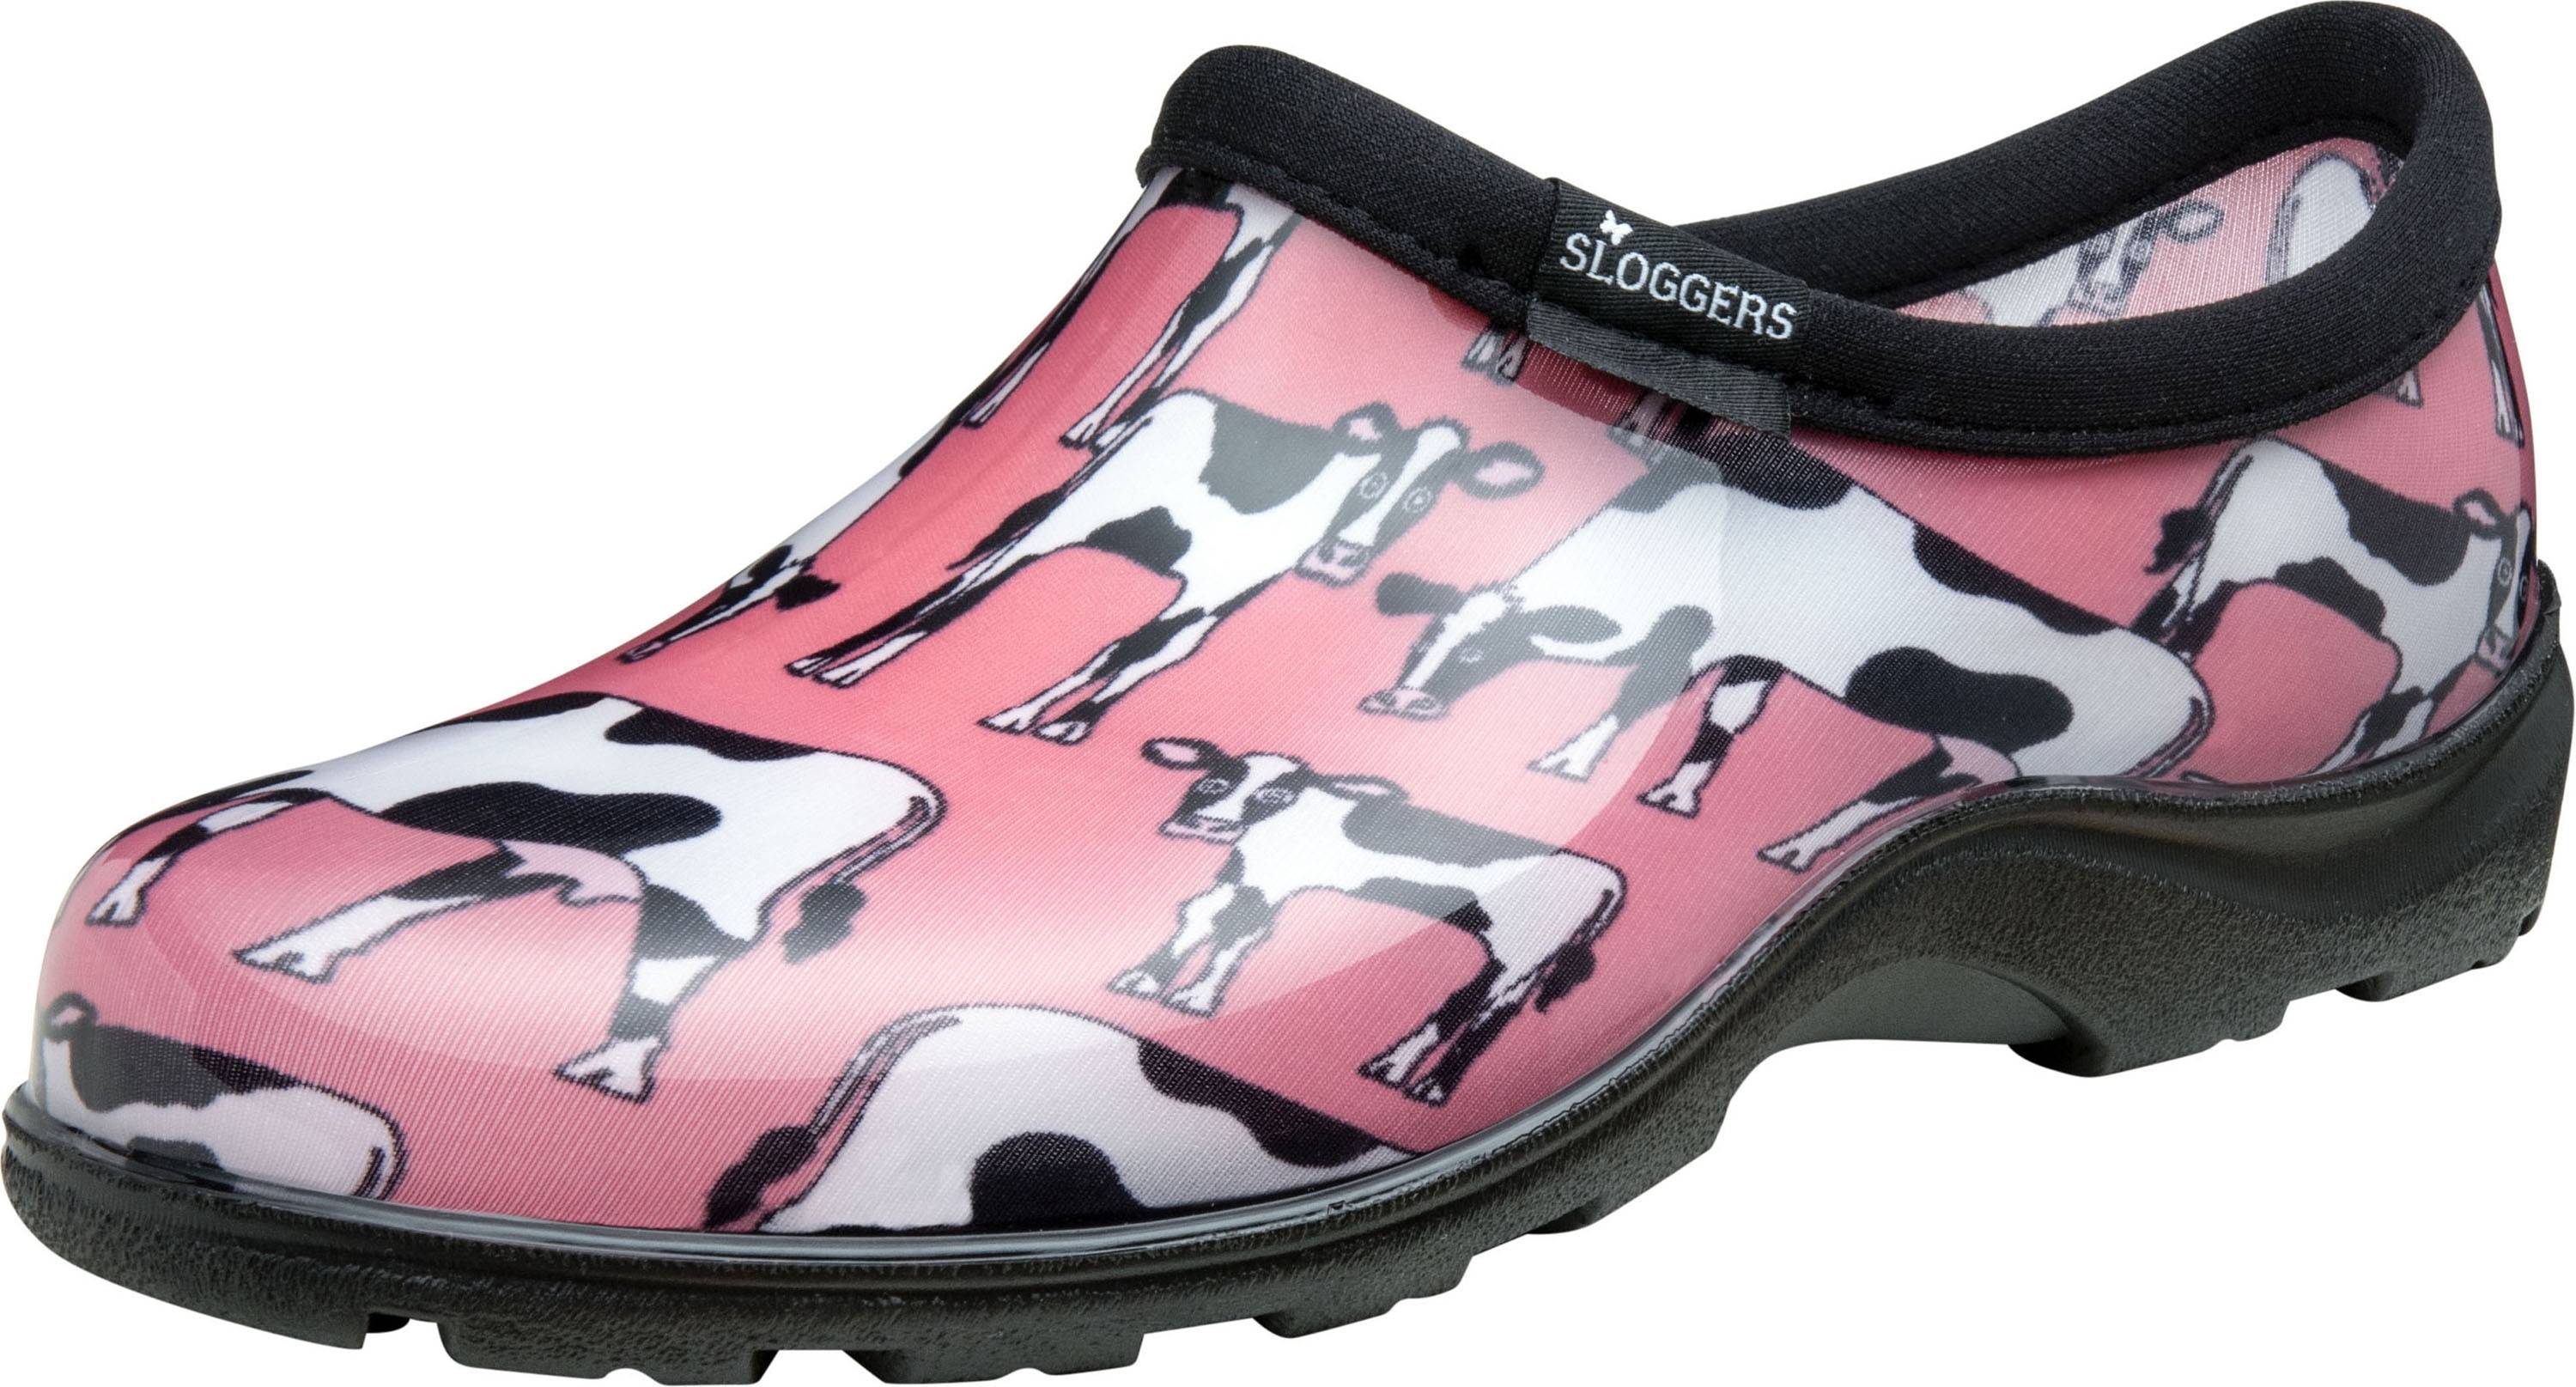 Sloggers Ladies Waterproof Comfort Shoes - Cowbella Pink